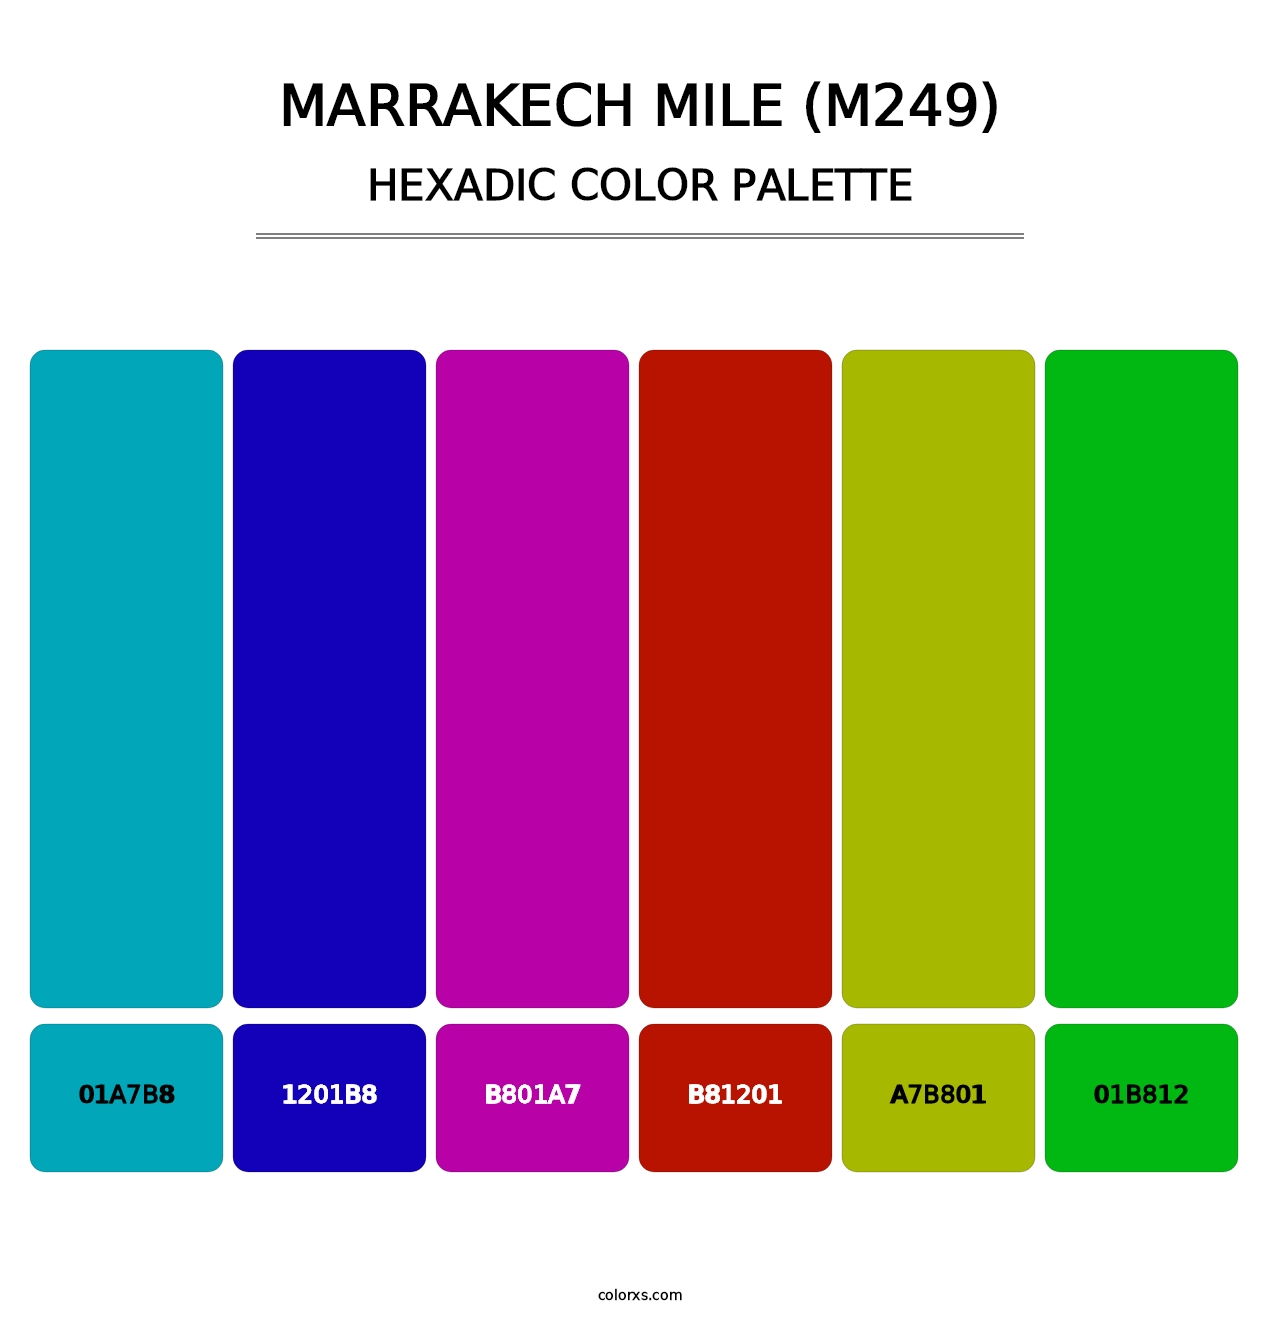 Marrakech Mile (M249) - Hexadic Color Palette